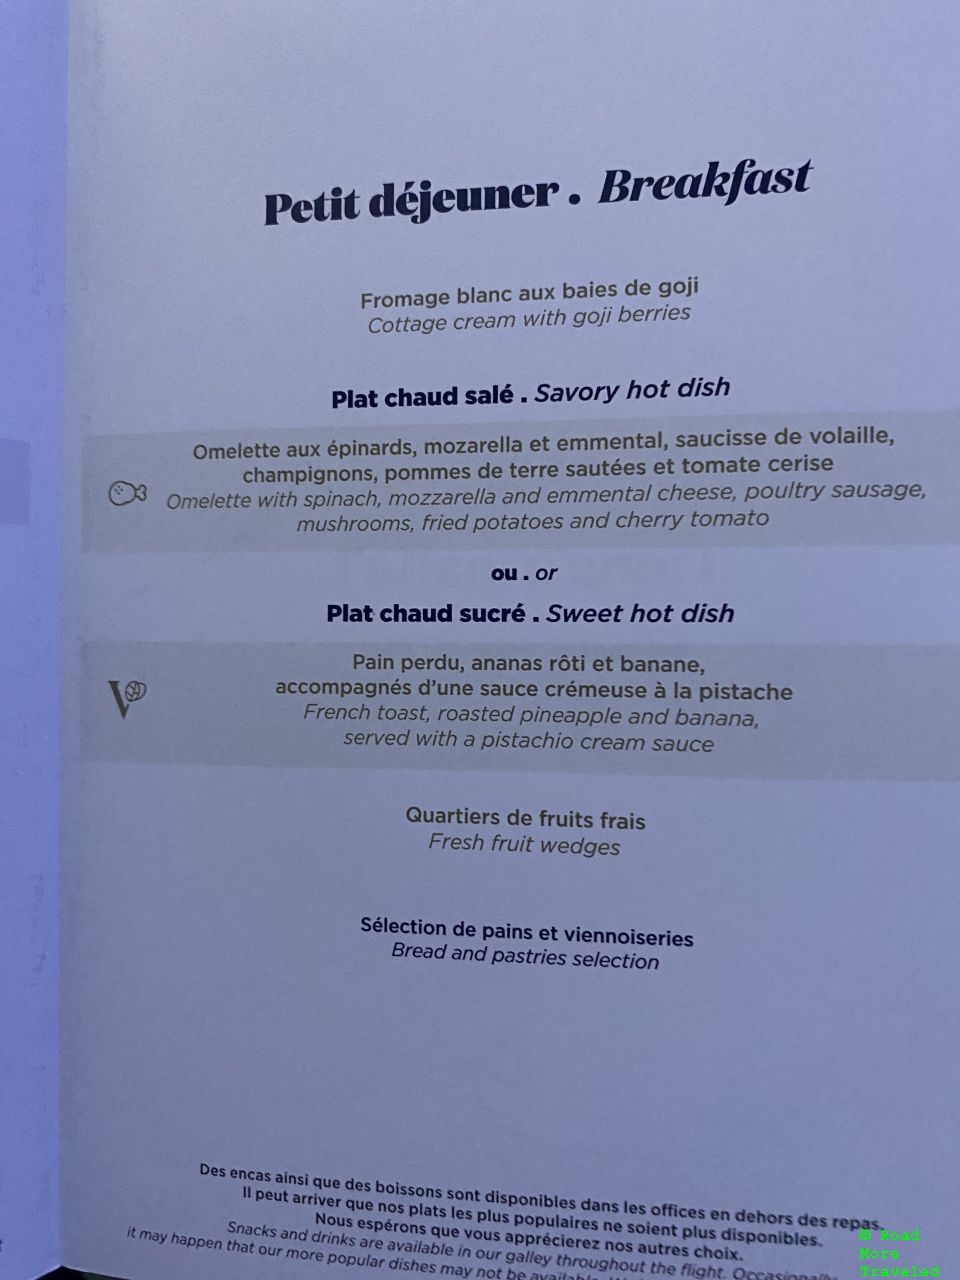 Air Tahiti Nui B787-9 Business Class - breakfast menu